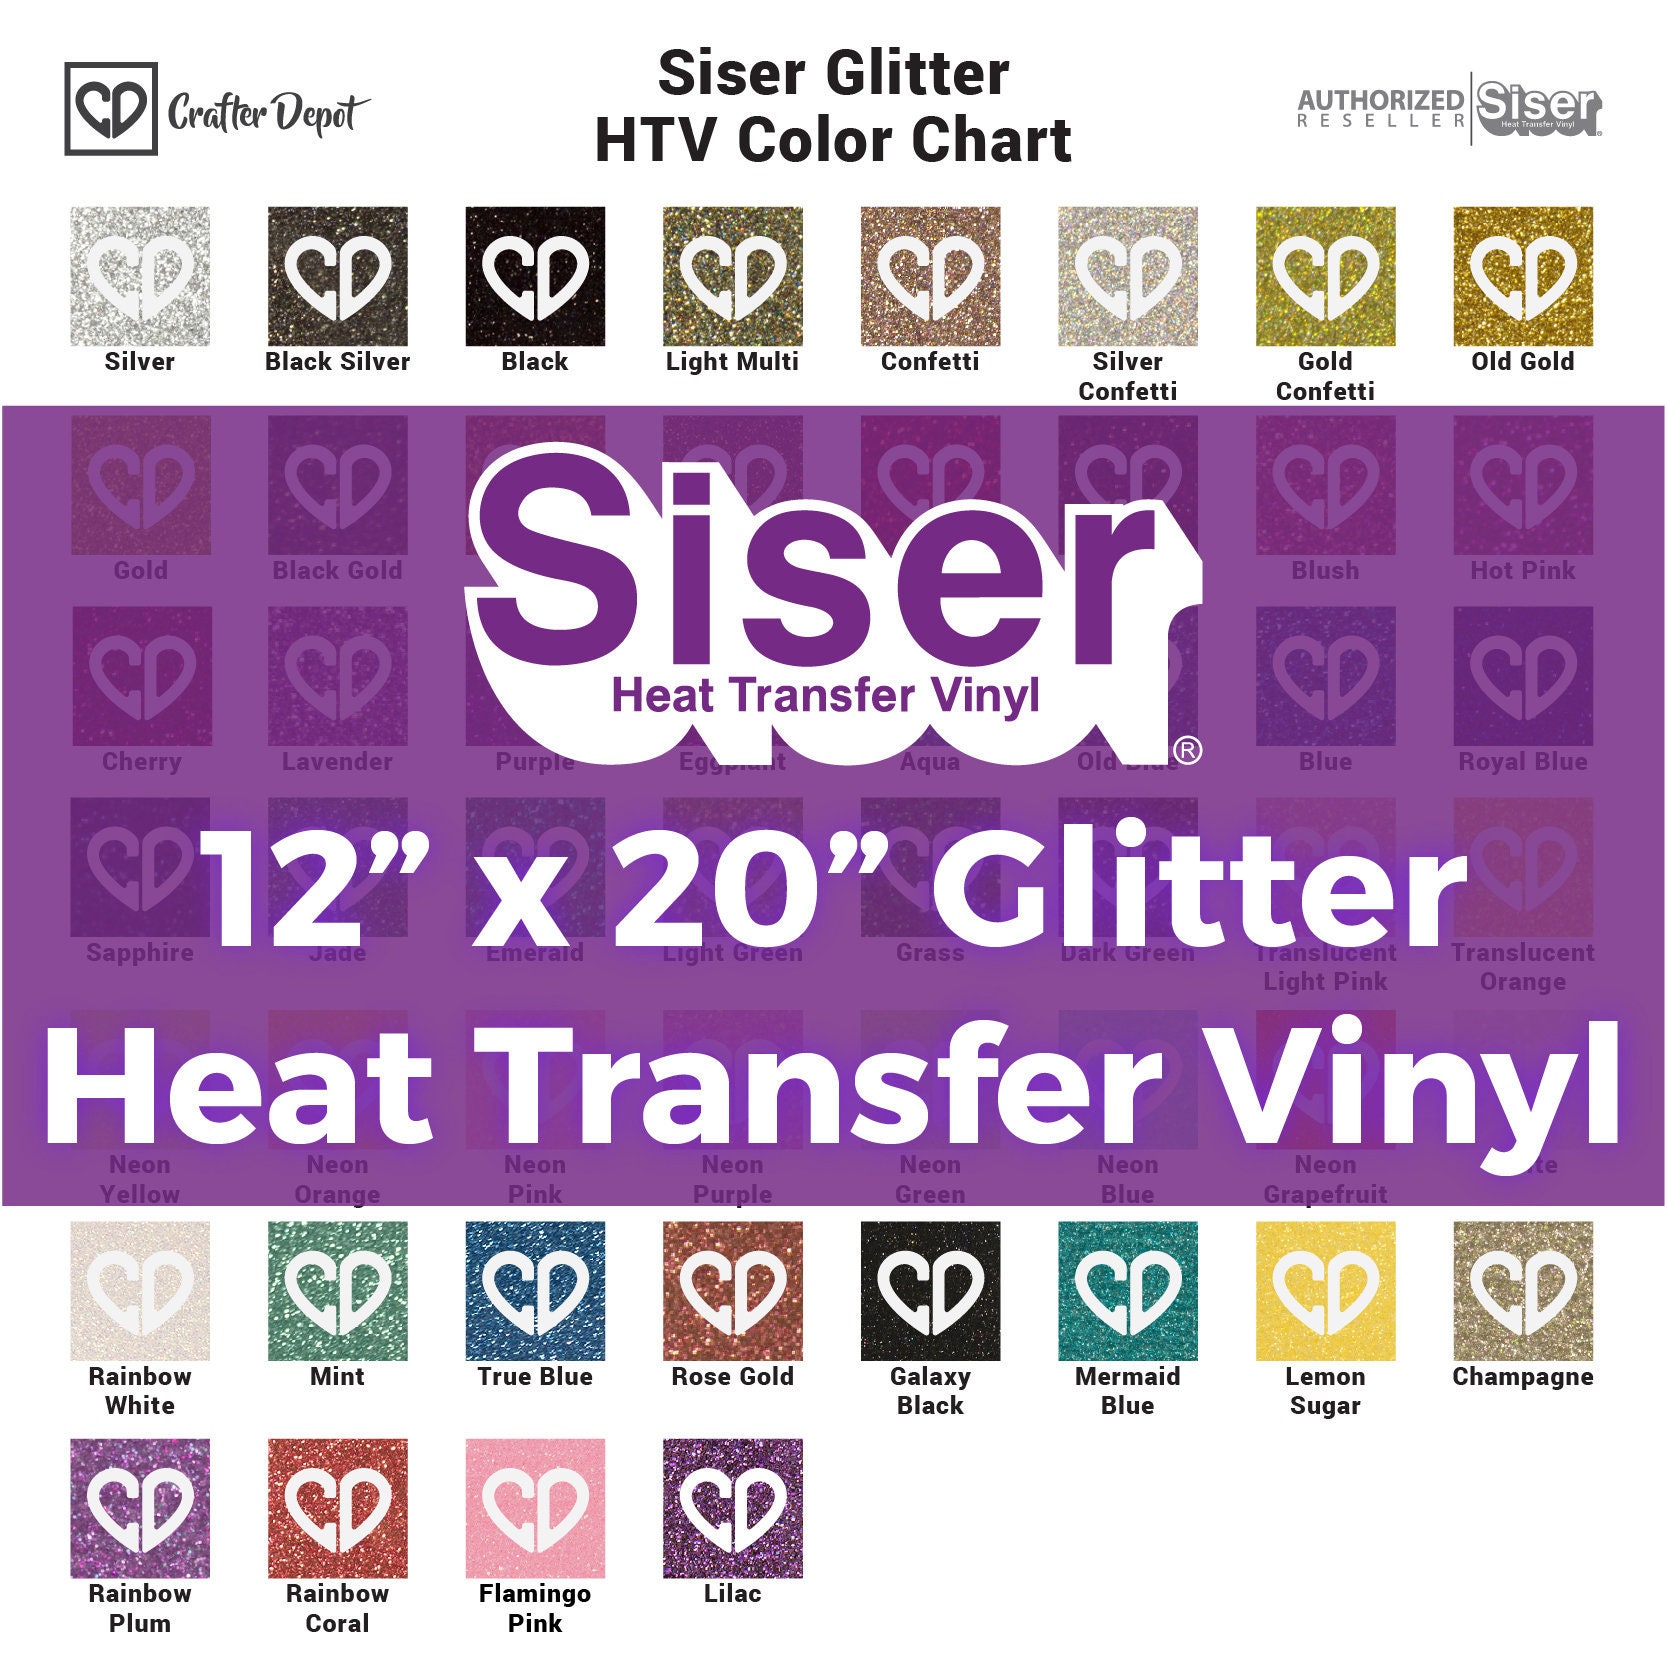 Silver Siser Glitter Heat Transfer Vinyl 